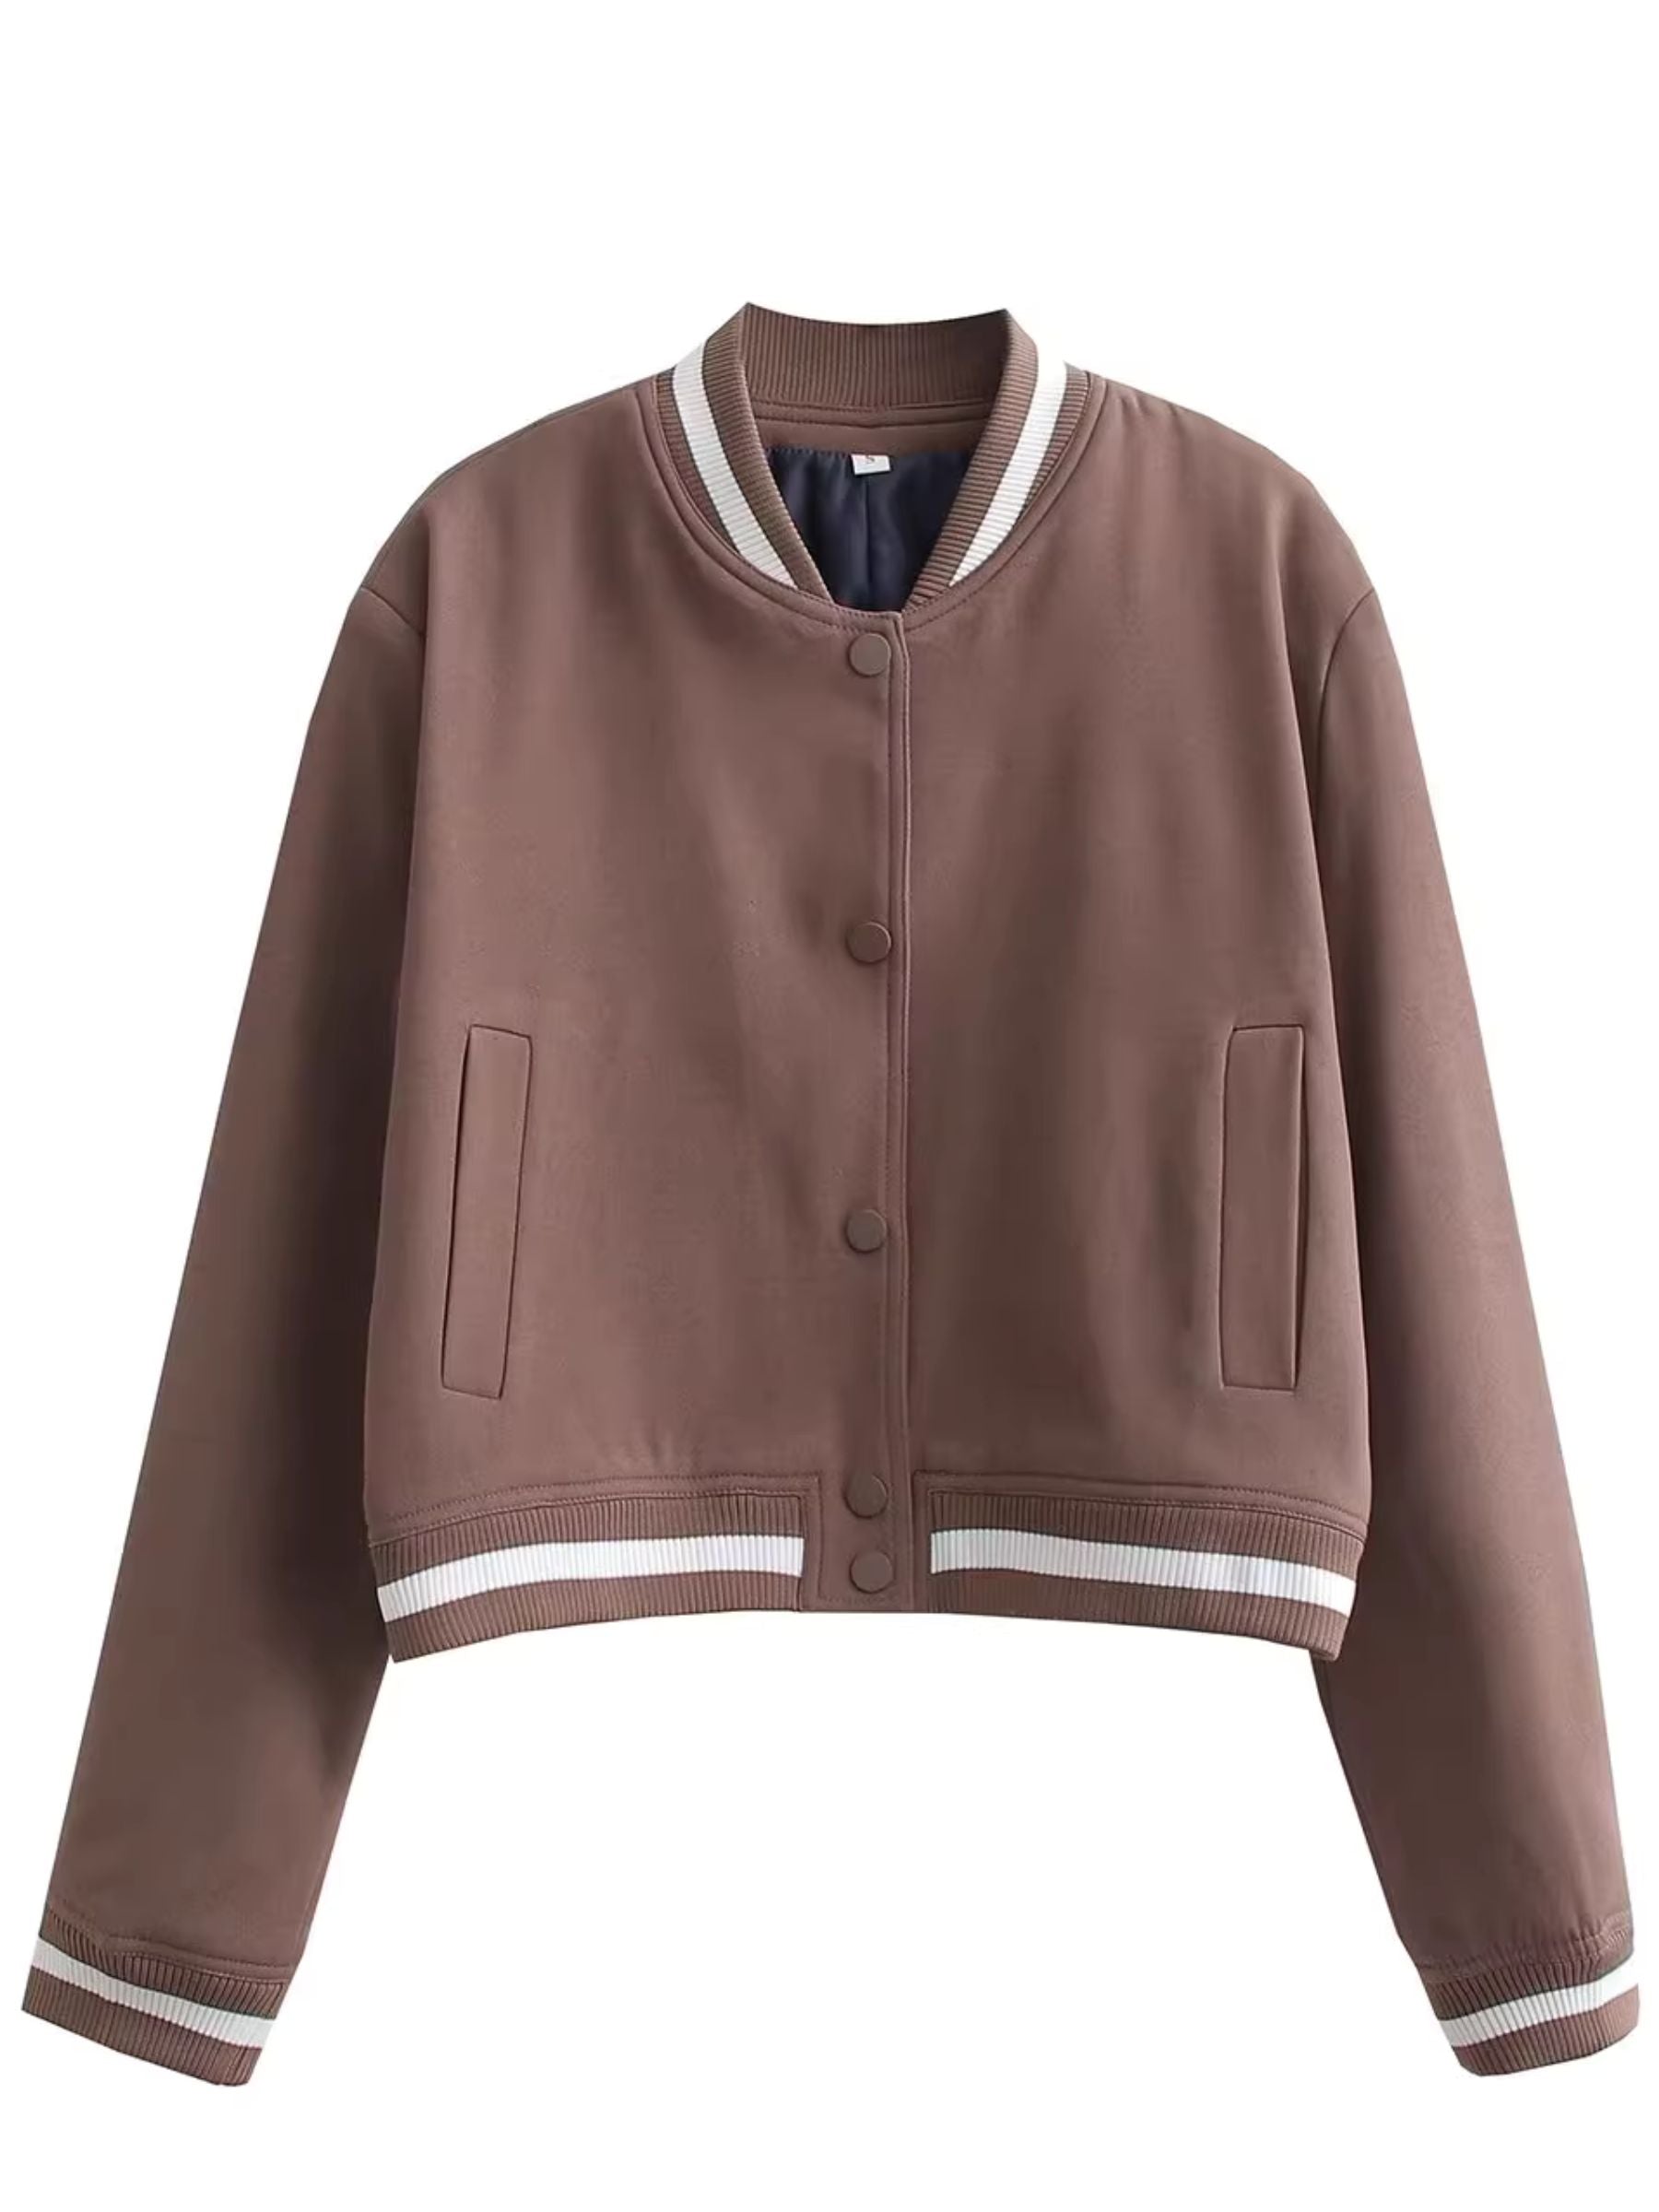 LaPose Fashion - Padme Loose Jacket - Baseball Jacket, Bomber Jacket, Coats & Jackets, Crop Jackets, Jackets, Winter Edit